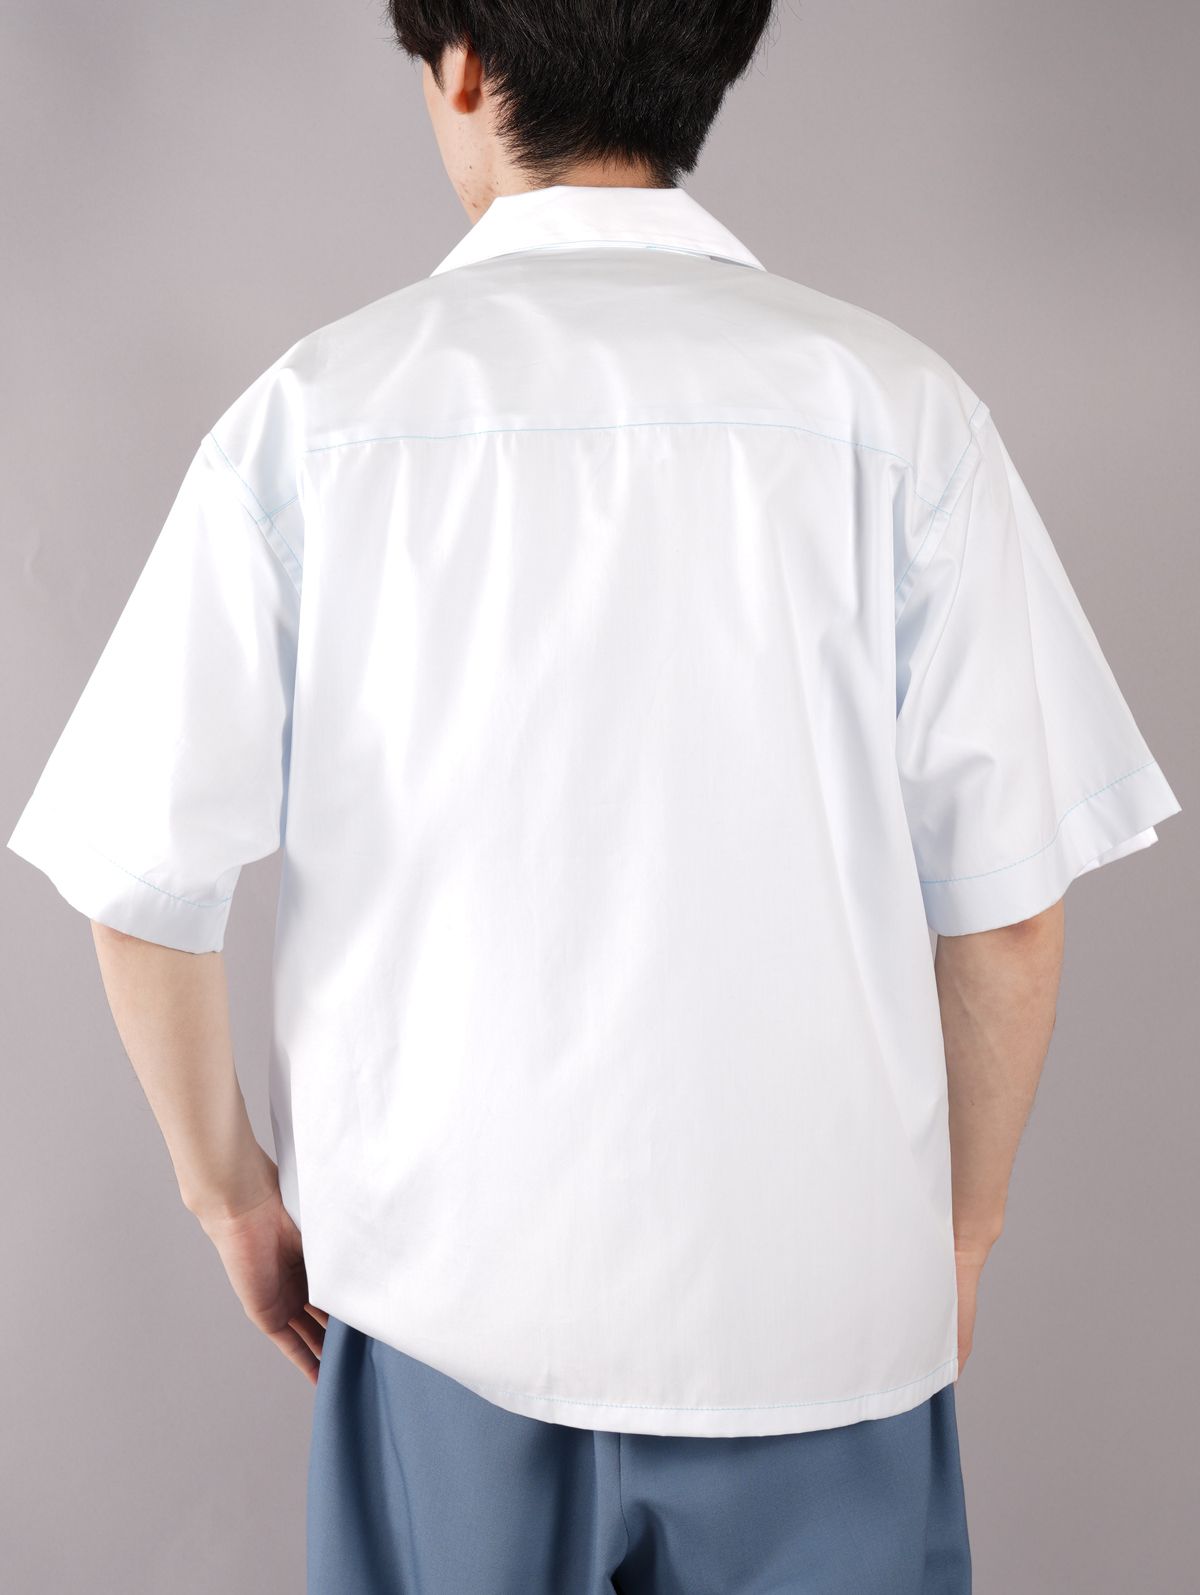 【ラスト1点】 ボウリングシャツ (ロゴ入り) / オープンカラーシャツ / ホワイト / ポプリン 生地 / メンズ - 46